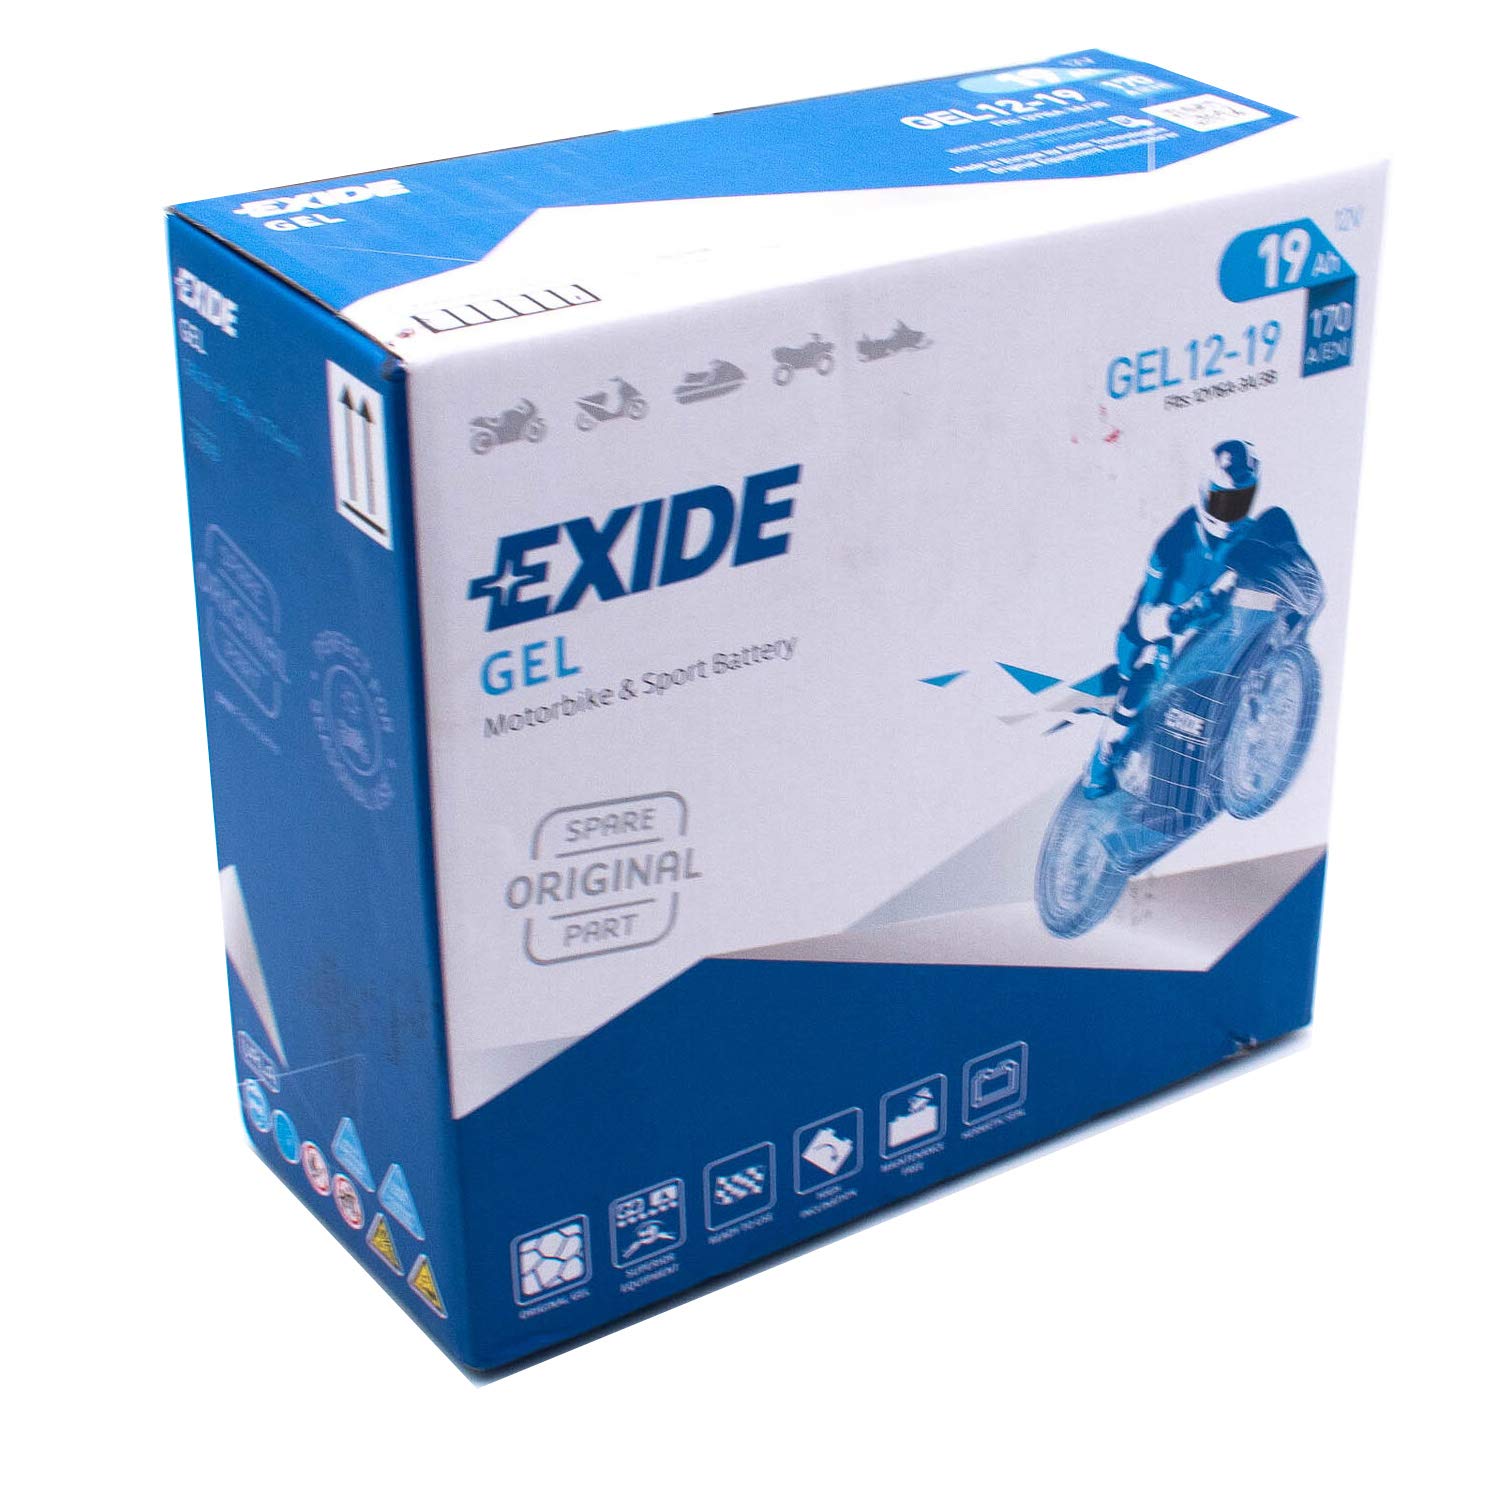 Gel Batterie - 707.26.550 - EXIDE GEL G19 von Exide